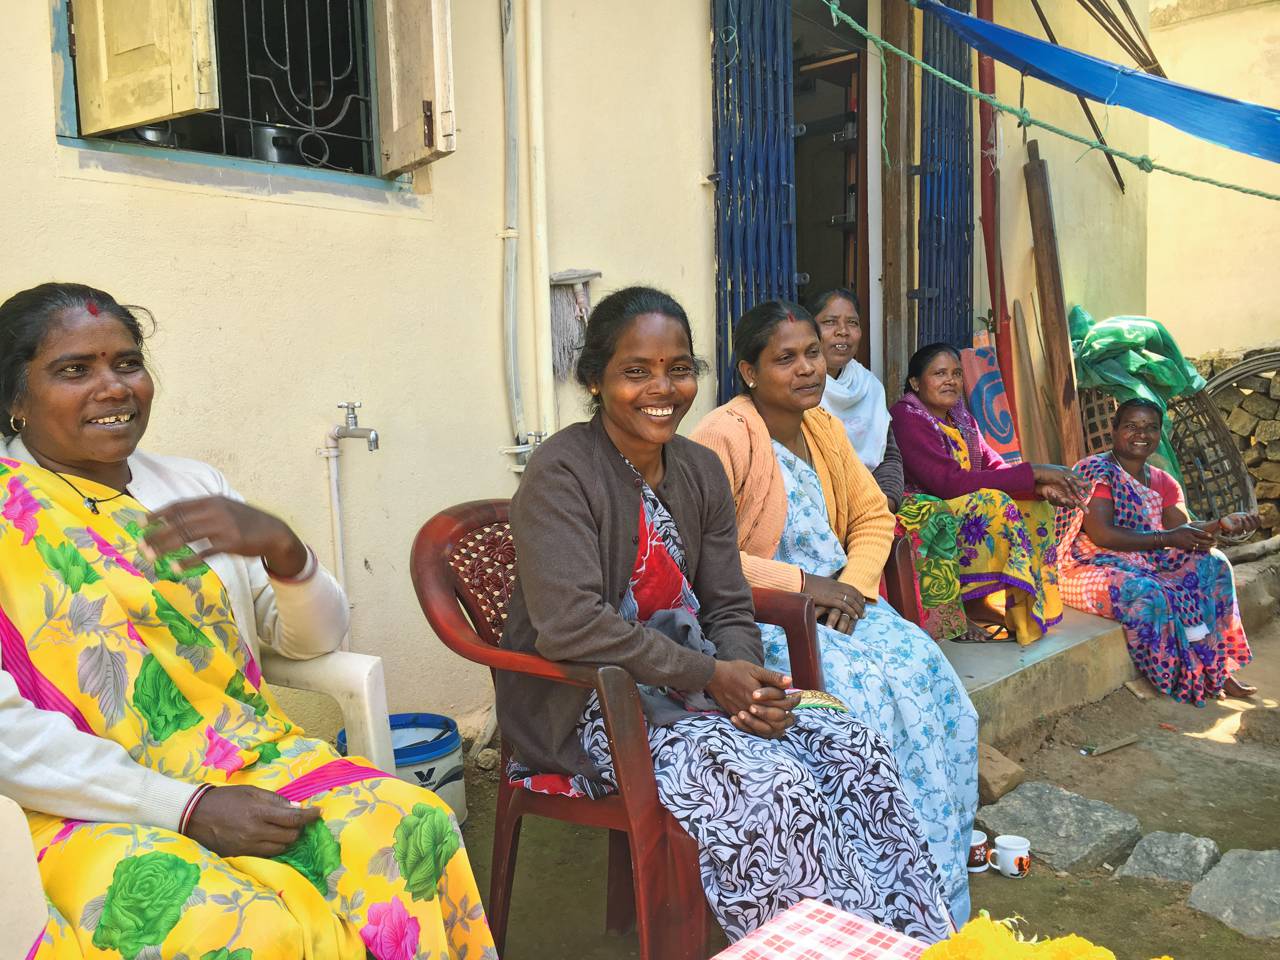 Des groupes chrétiens au service des pauvres en Inde